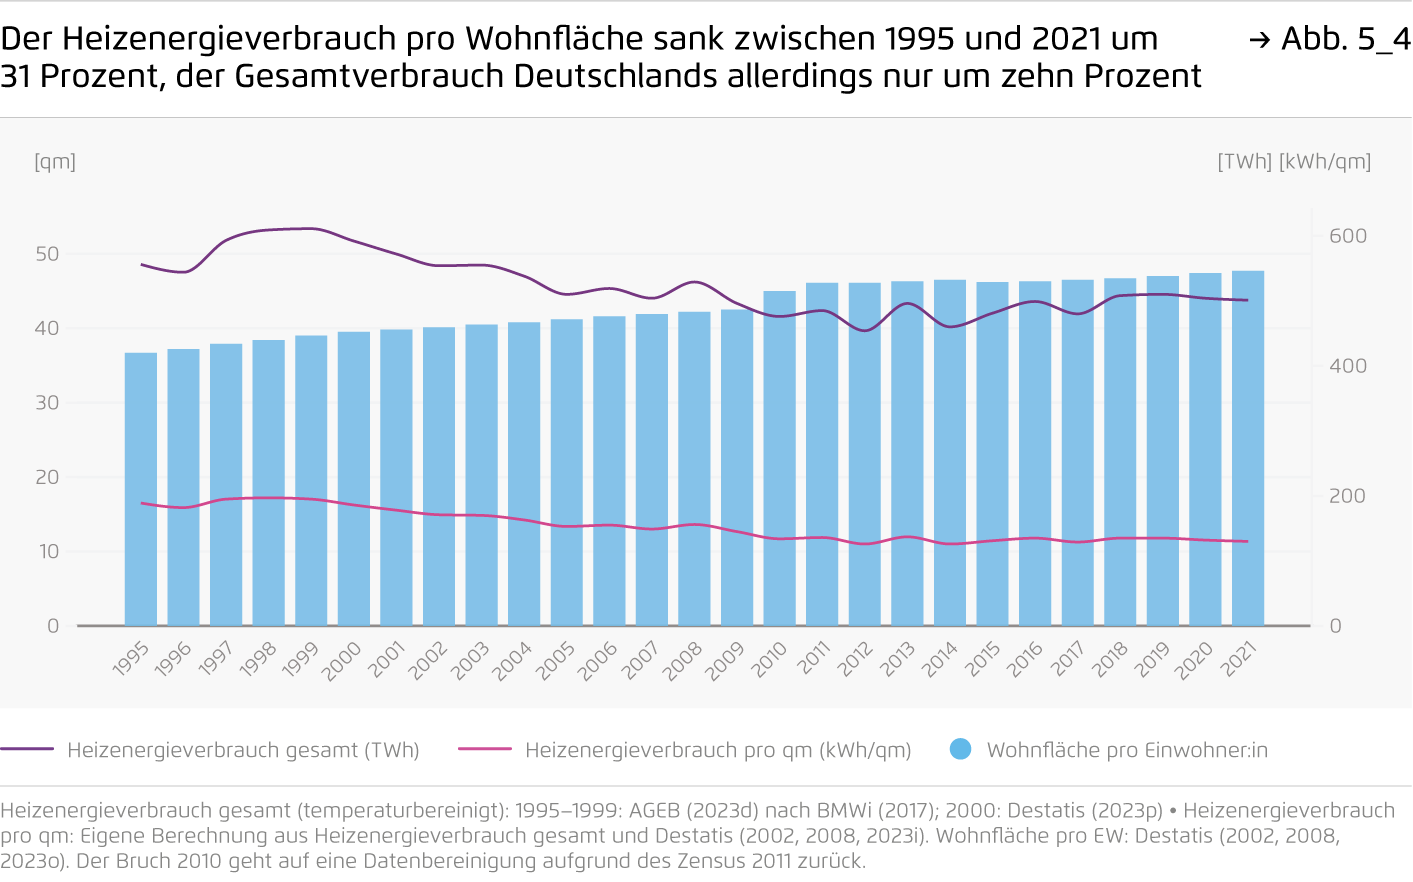 Preview for Der Heizenergieverbrauch pro Wohnfläche sank zwischen 1995 und 2021 um 31 Prozent, der Gesamtverbrauch Deutschlands allerdings nur um zehn Prozent